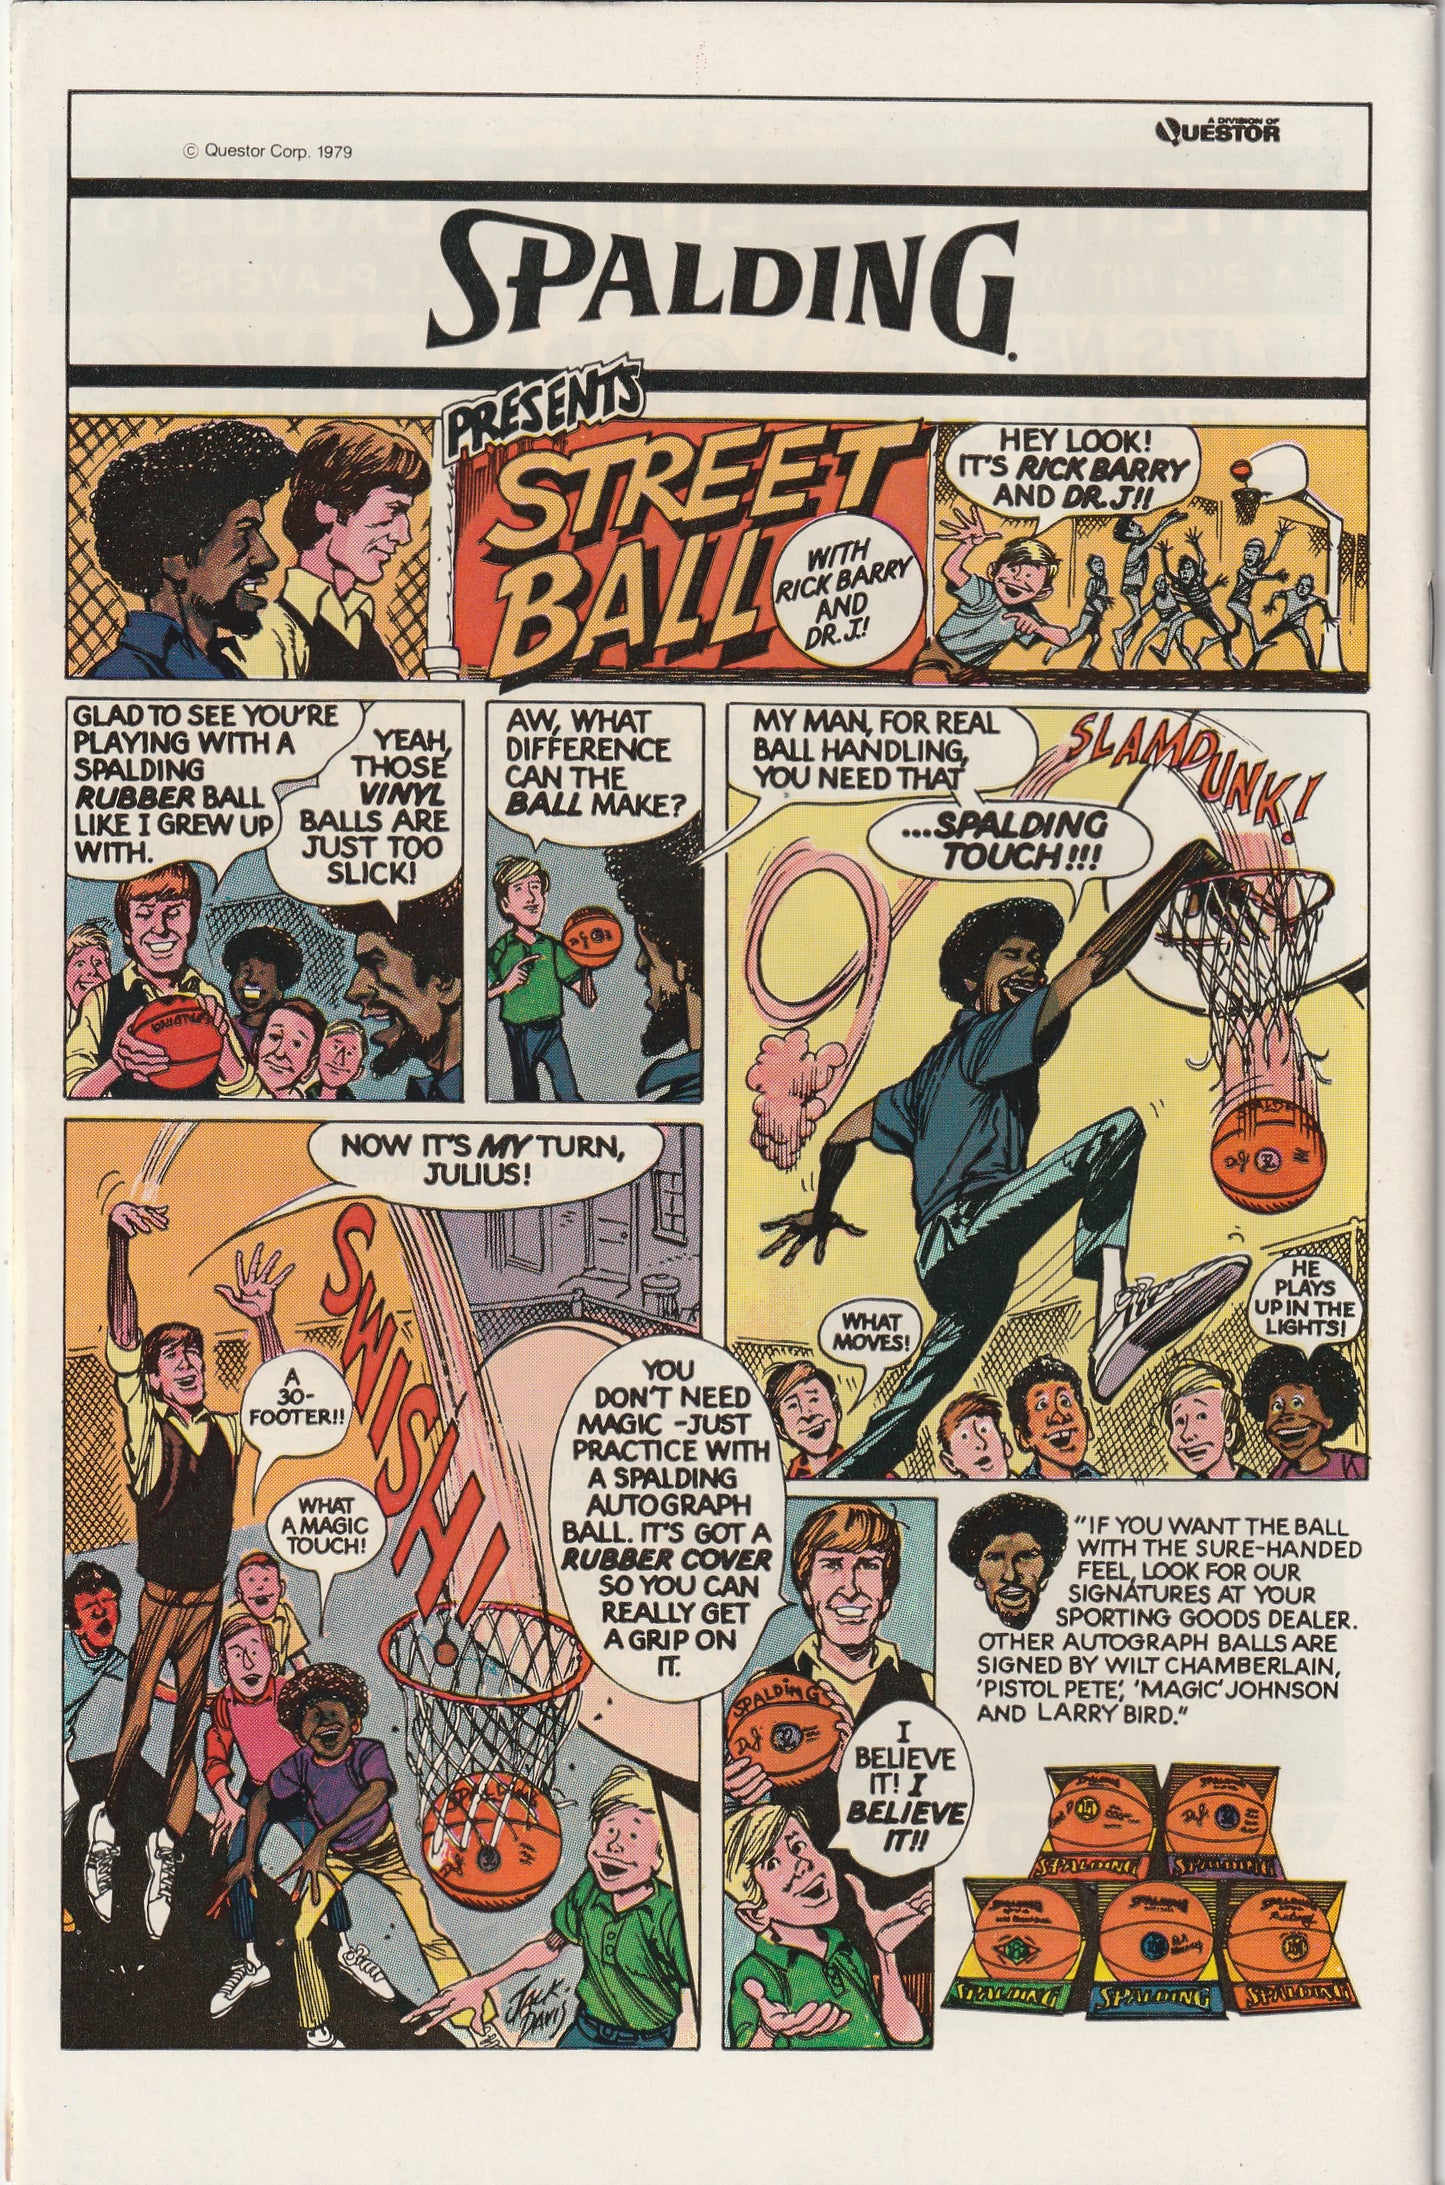 Legion of Super-Heroes #264 (1980)